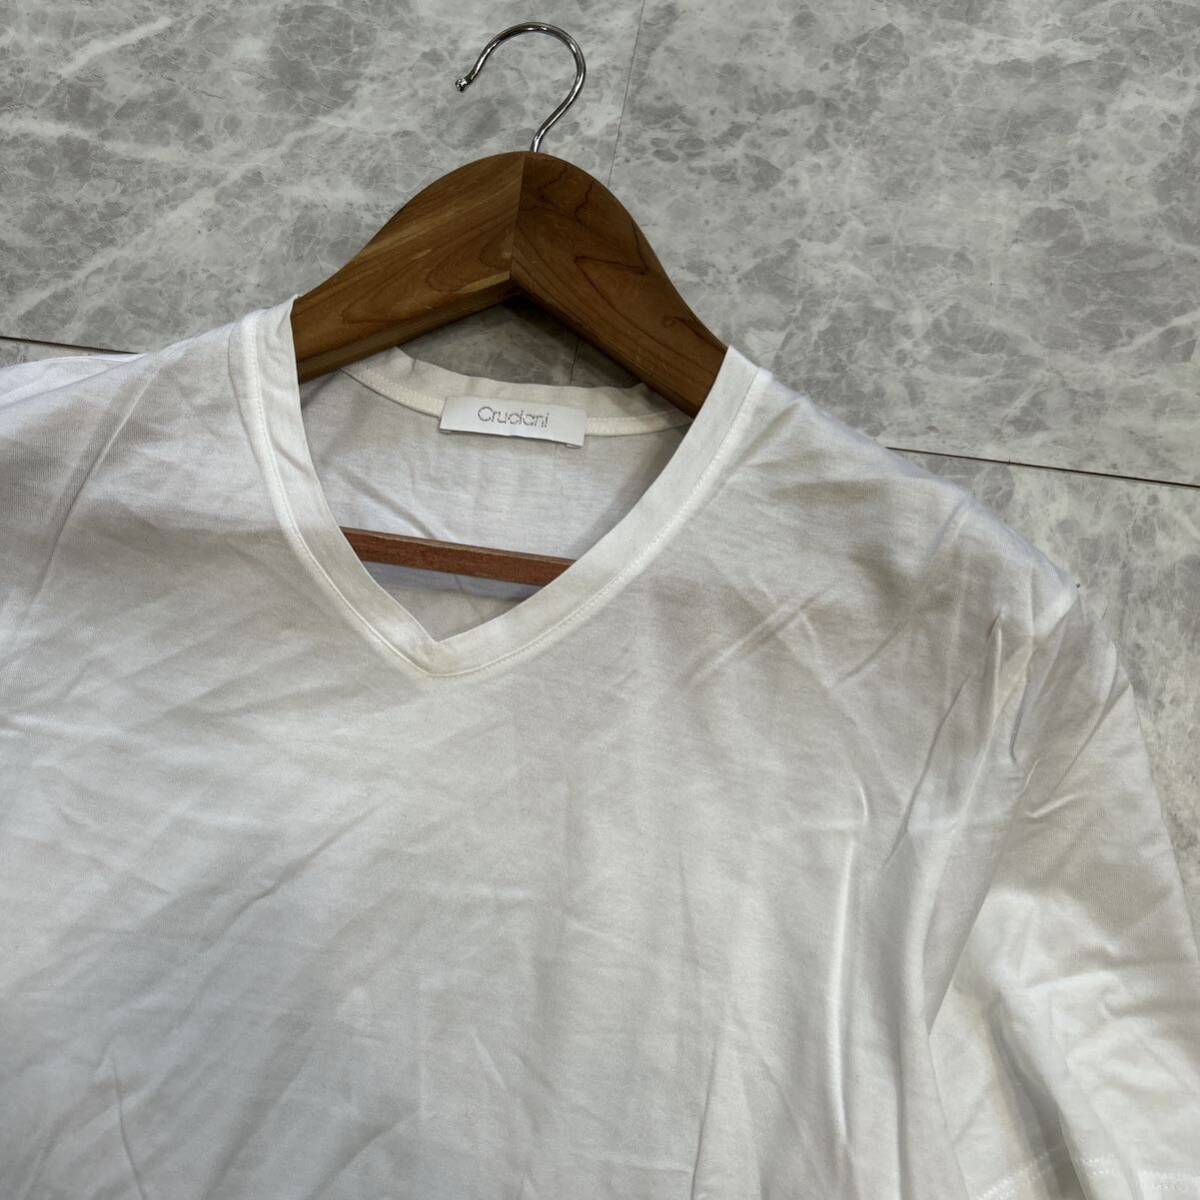 VV ■ イタリア製 '高級感溢れる' Cruciani クルチアーニ 半袖 COTTON Tシャツ / カットソー size52 メンズ 紳士服 トップス 古着 白_画像4